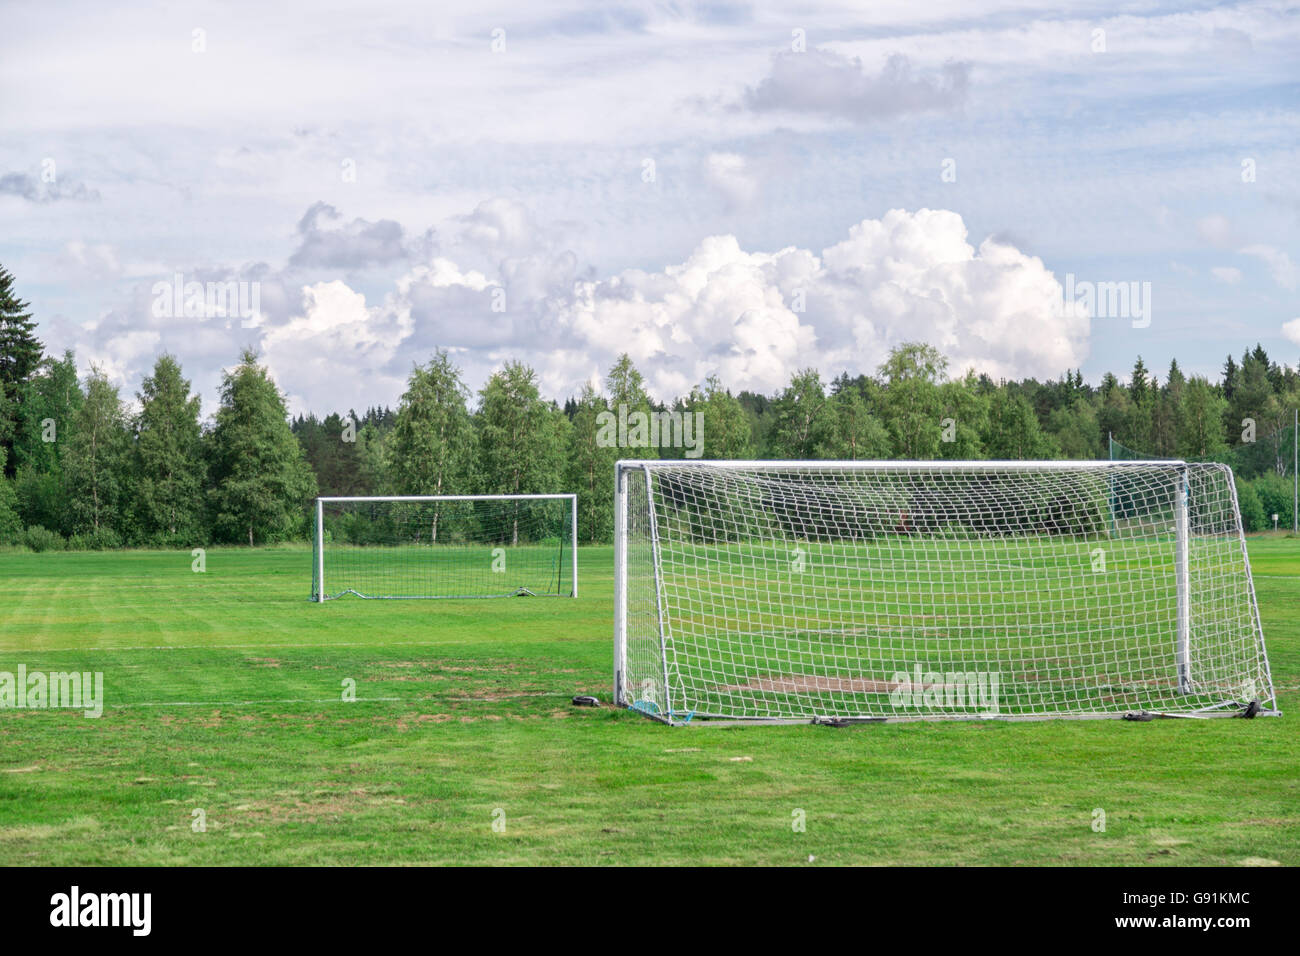 Fußballtore auf Fußballplatz mit bewölktem Himmel und Bäume. Stockfoto